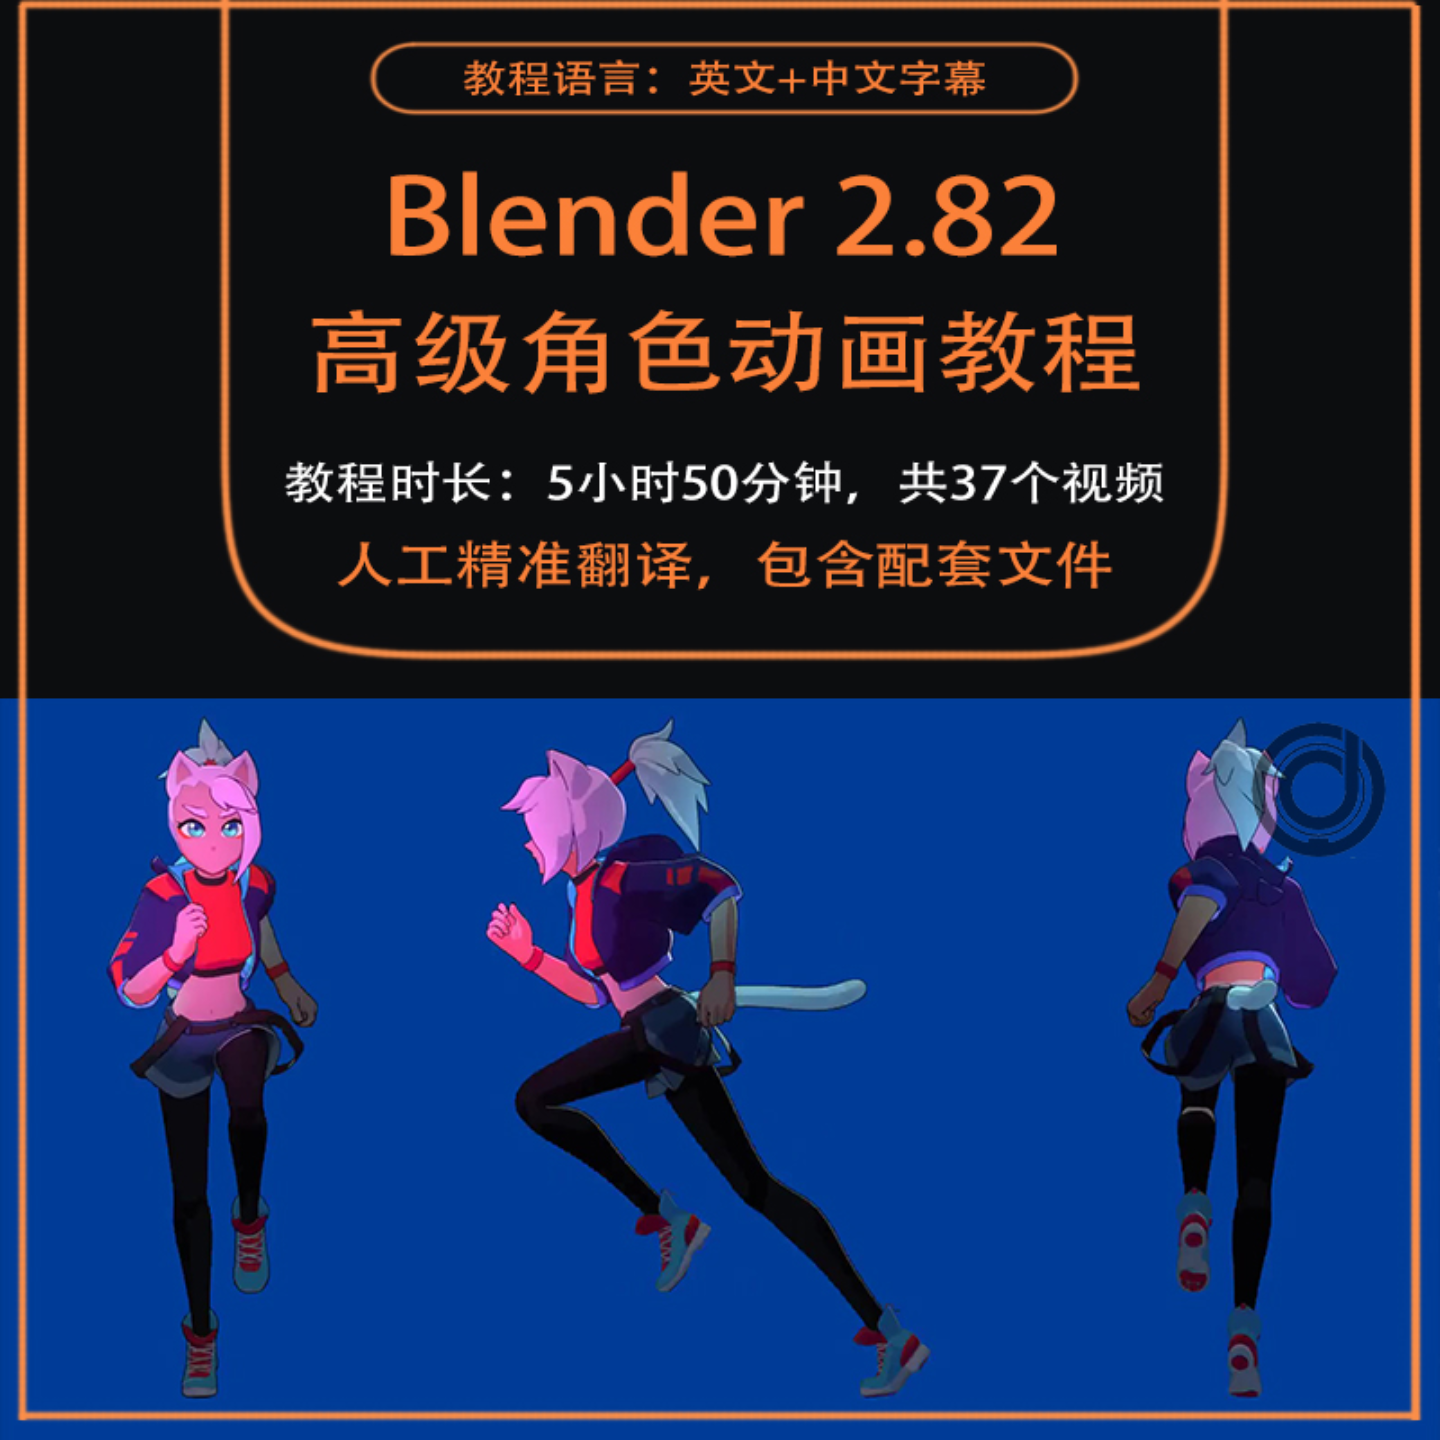 Blender高级角色动画(赛博朋克格斗术)视频教程基础绑定动作姿势渲染合成中文字幕